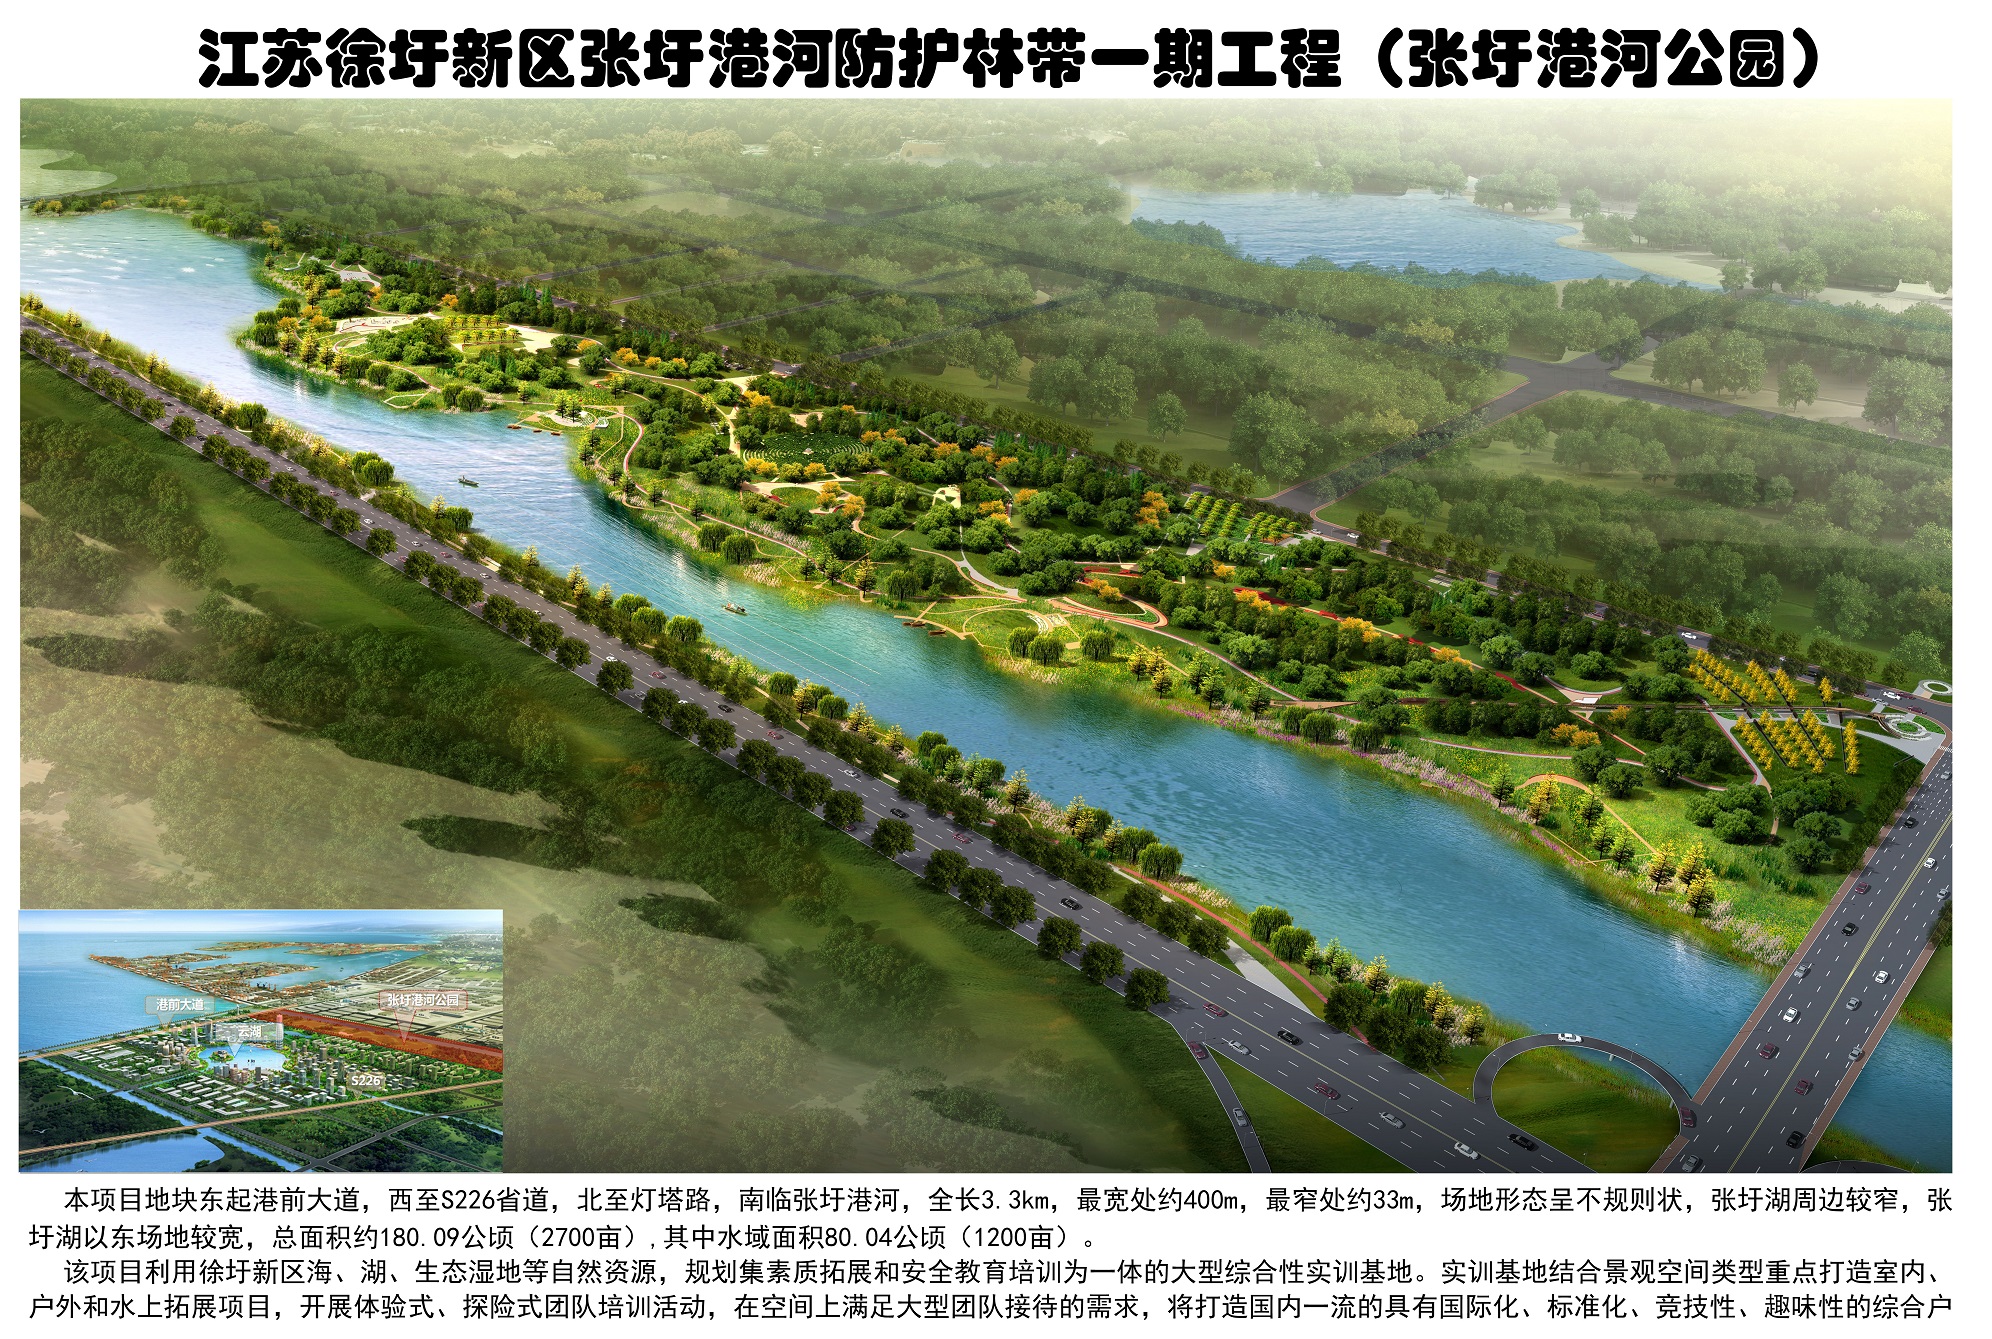 張圩港河北岸綜合綠地公園(圖1)